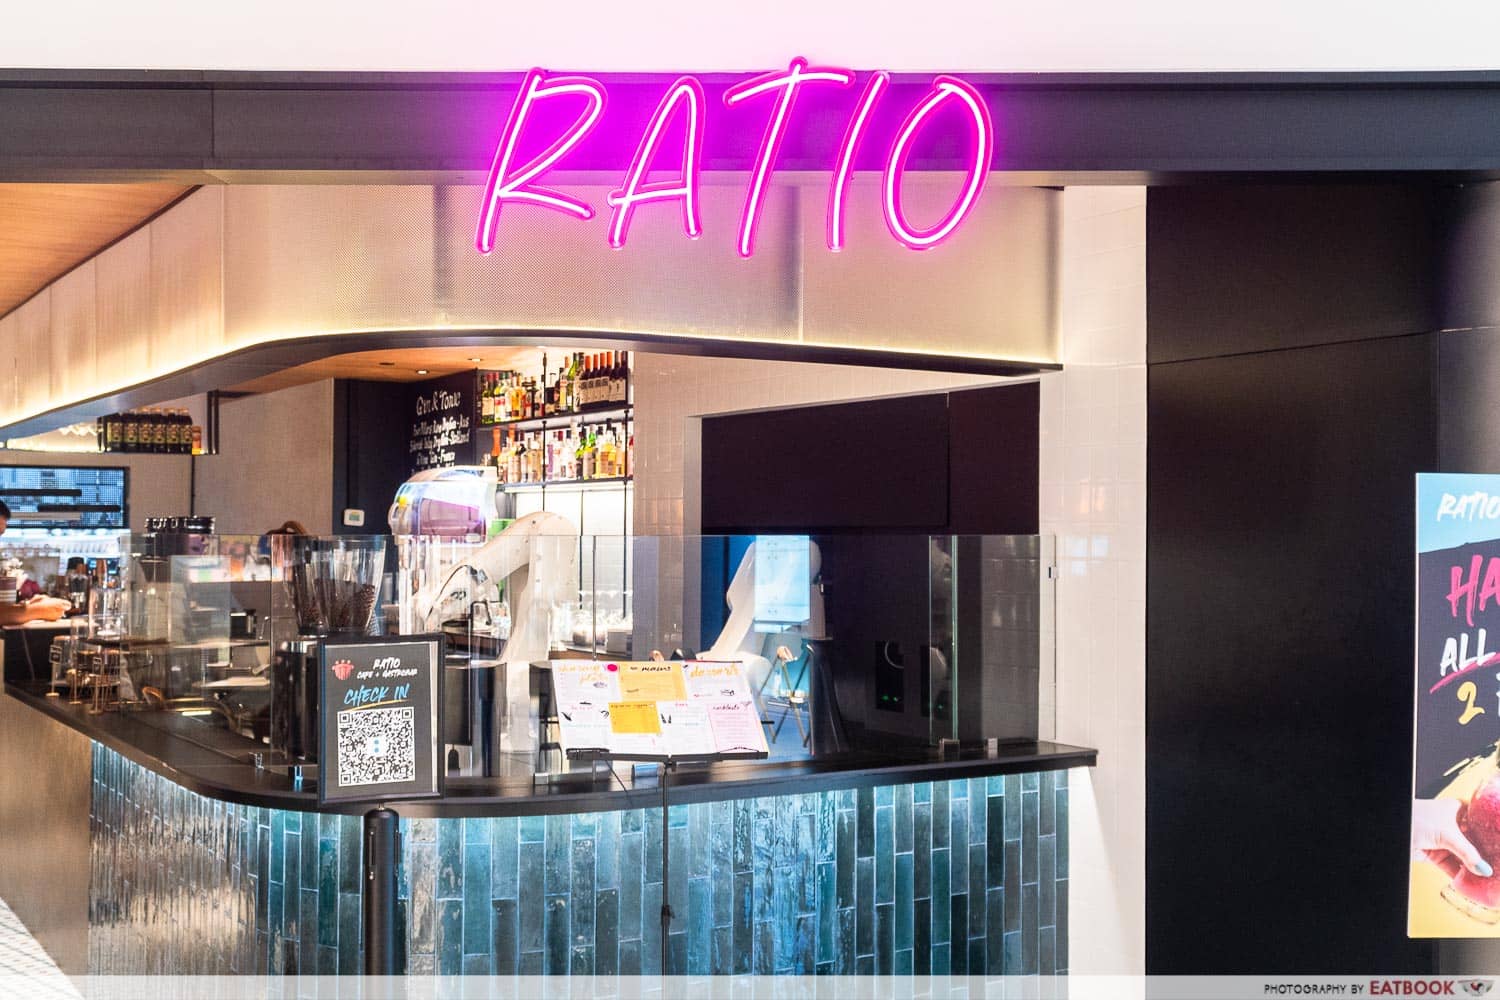 RATIO Cafe + Gastrobar storefront